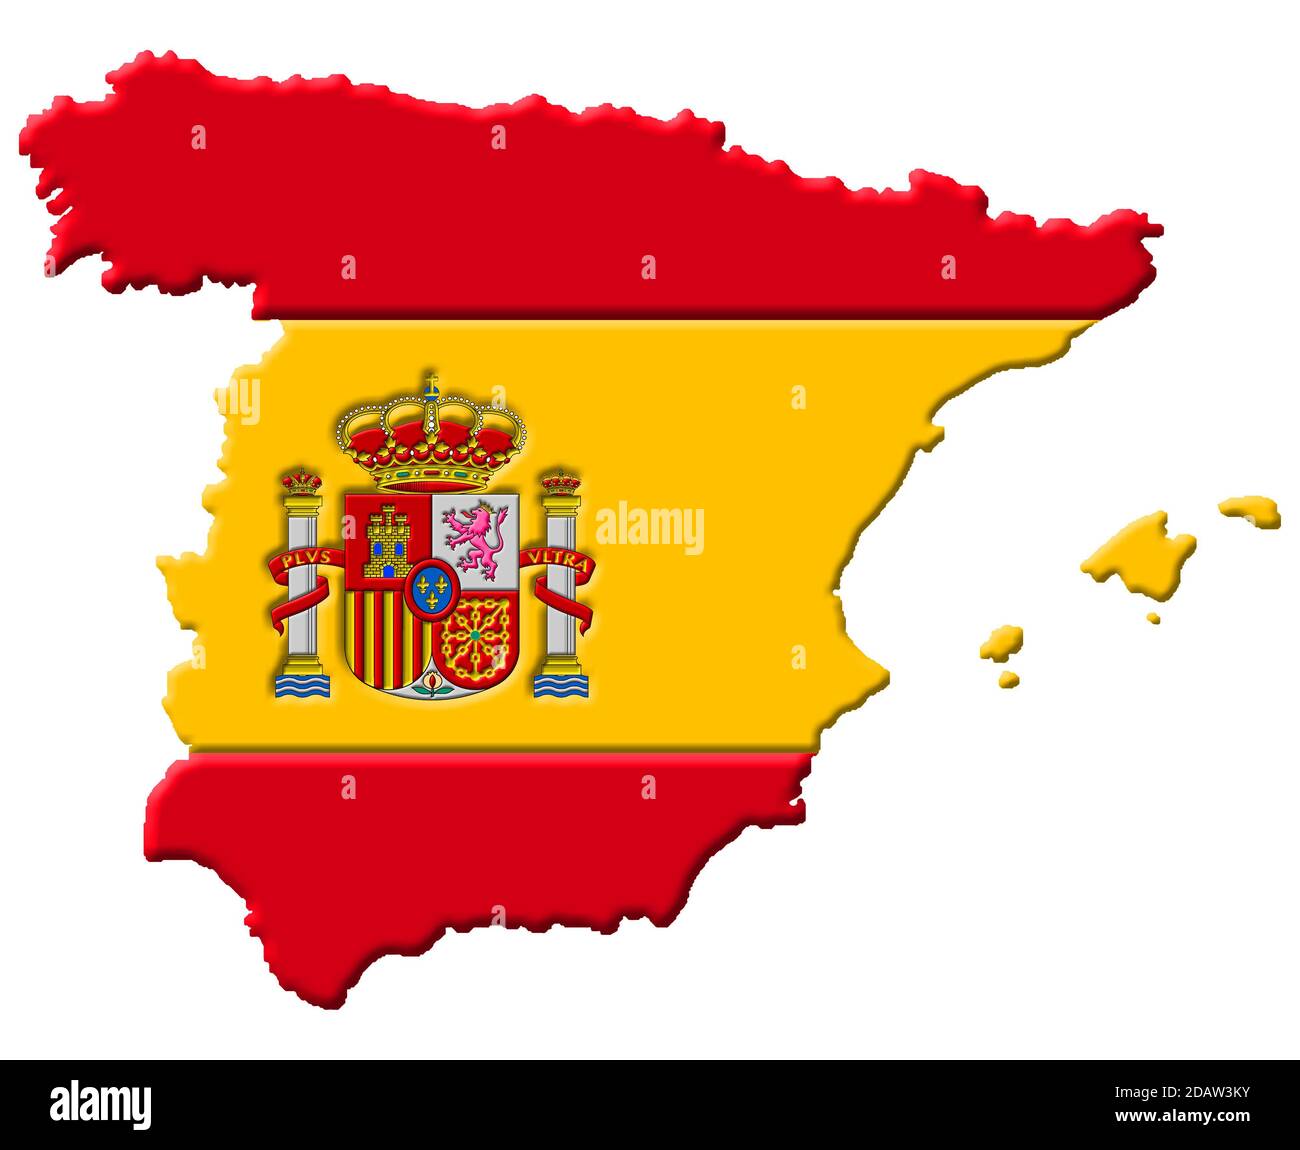 Carte espagnole Banque d'images détourées - Alamy